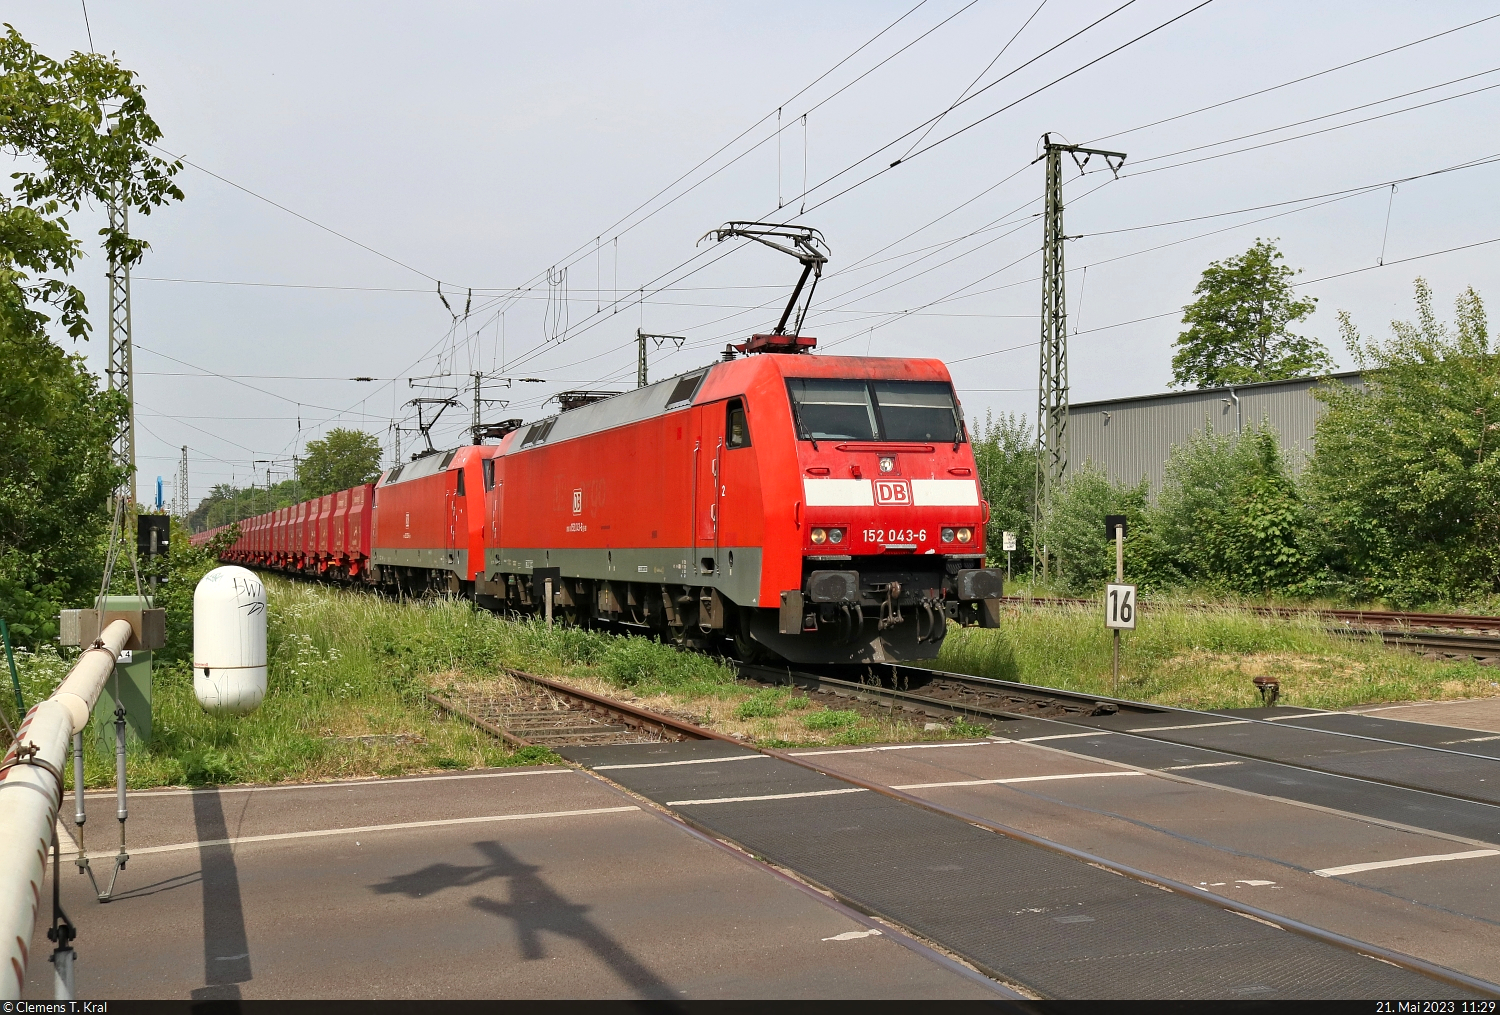 Erzzug mit 152 043-6 und 152 123-6 (Siemens ES64F) wurde an der Schranke in Magdeburg-Sudenburg Richtung Magdeburg Hbf erwischt.

🧰 DB Cargo
🕓 21.5.2023 | 11:29 Uhr